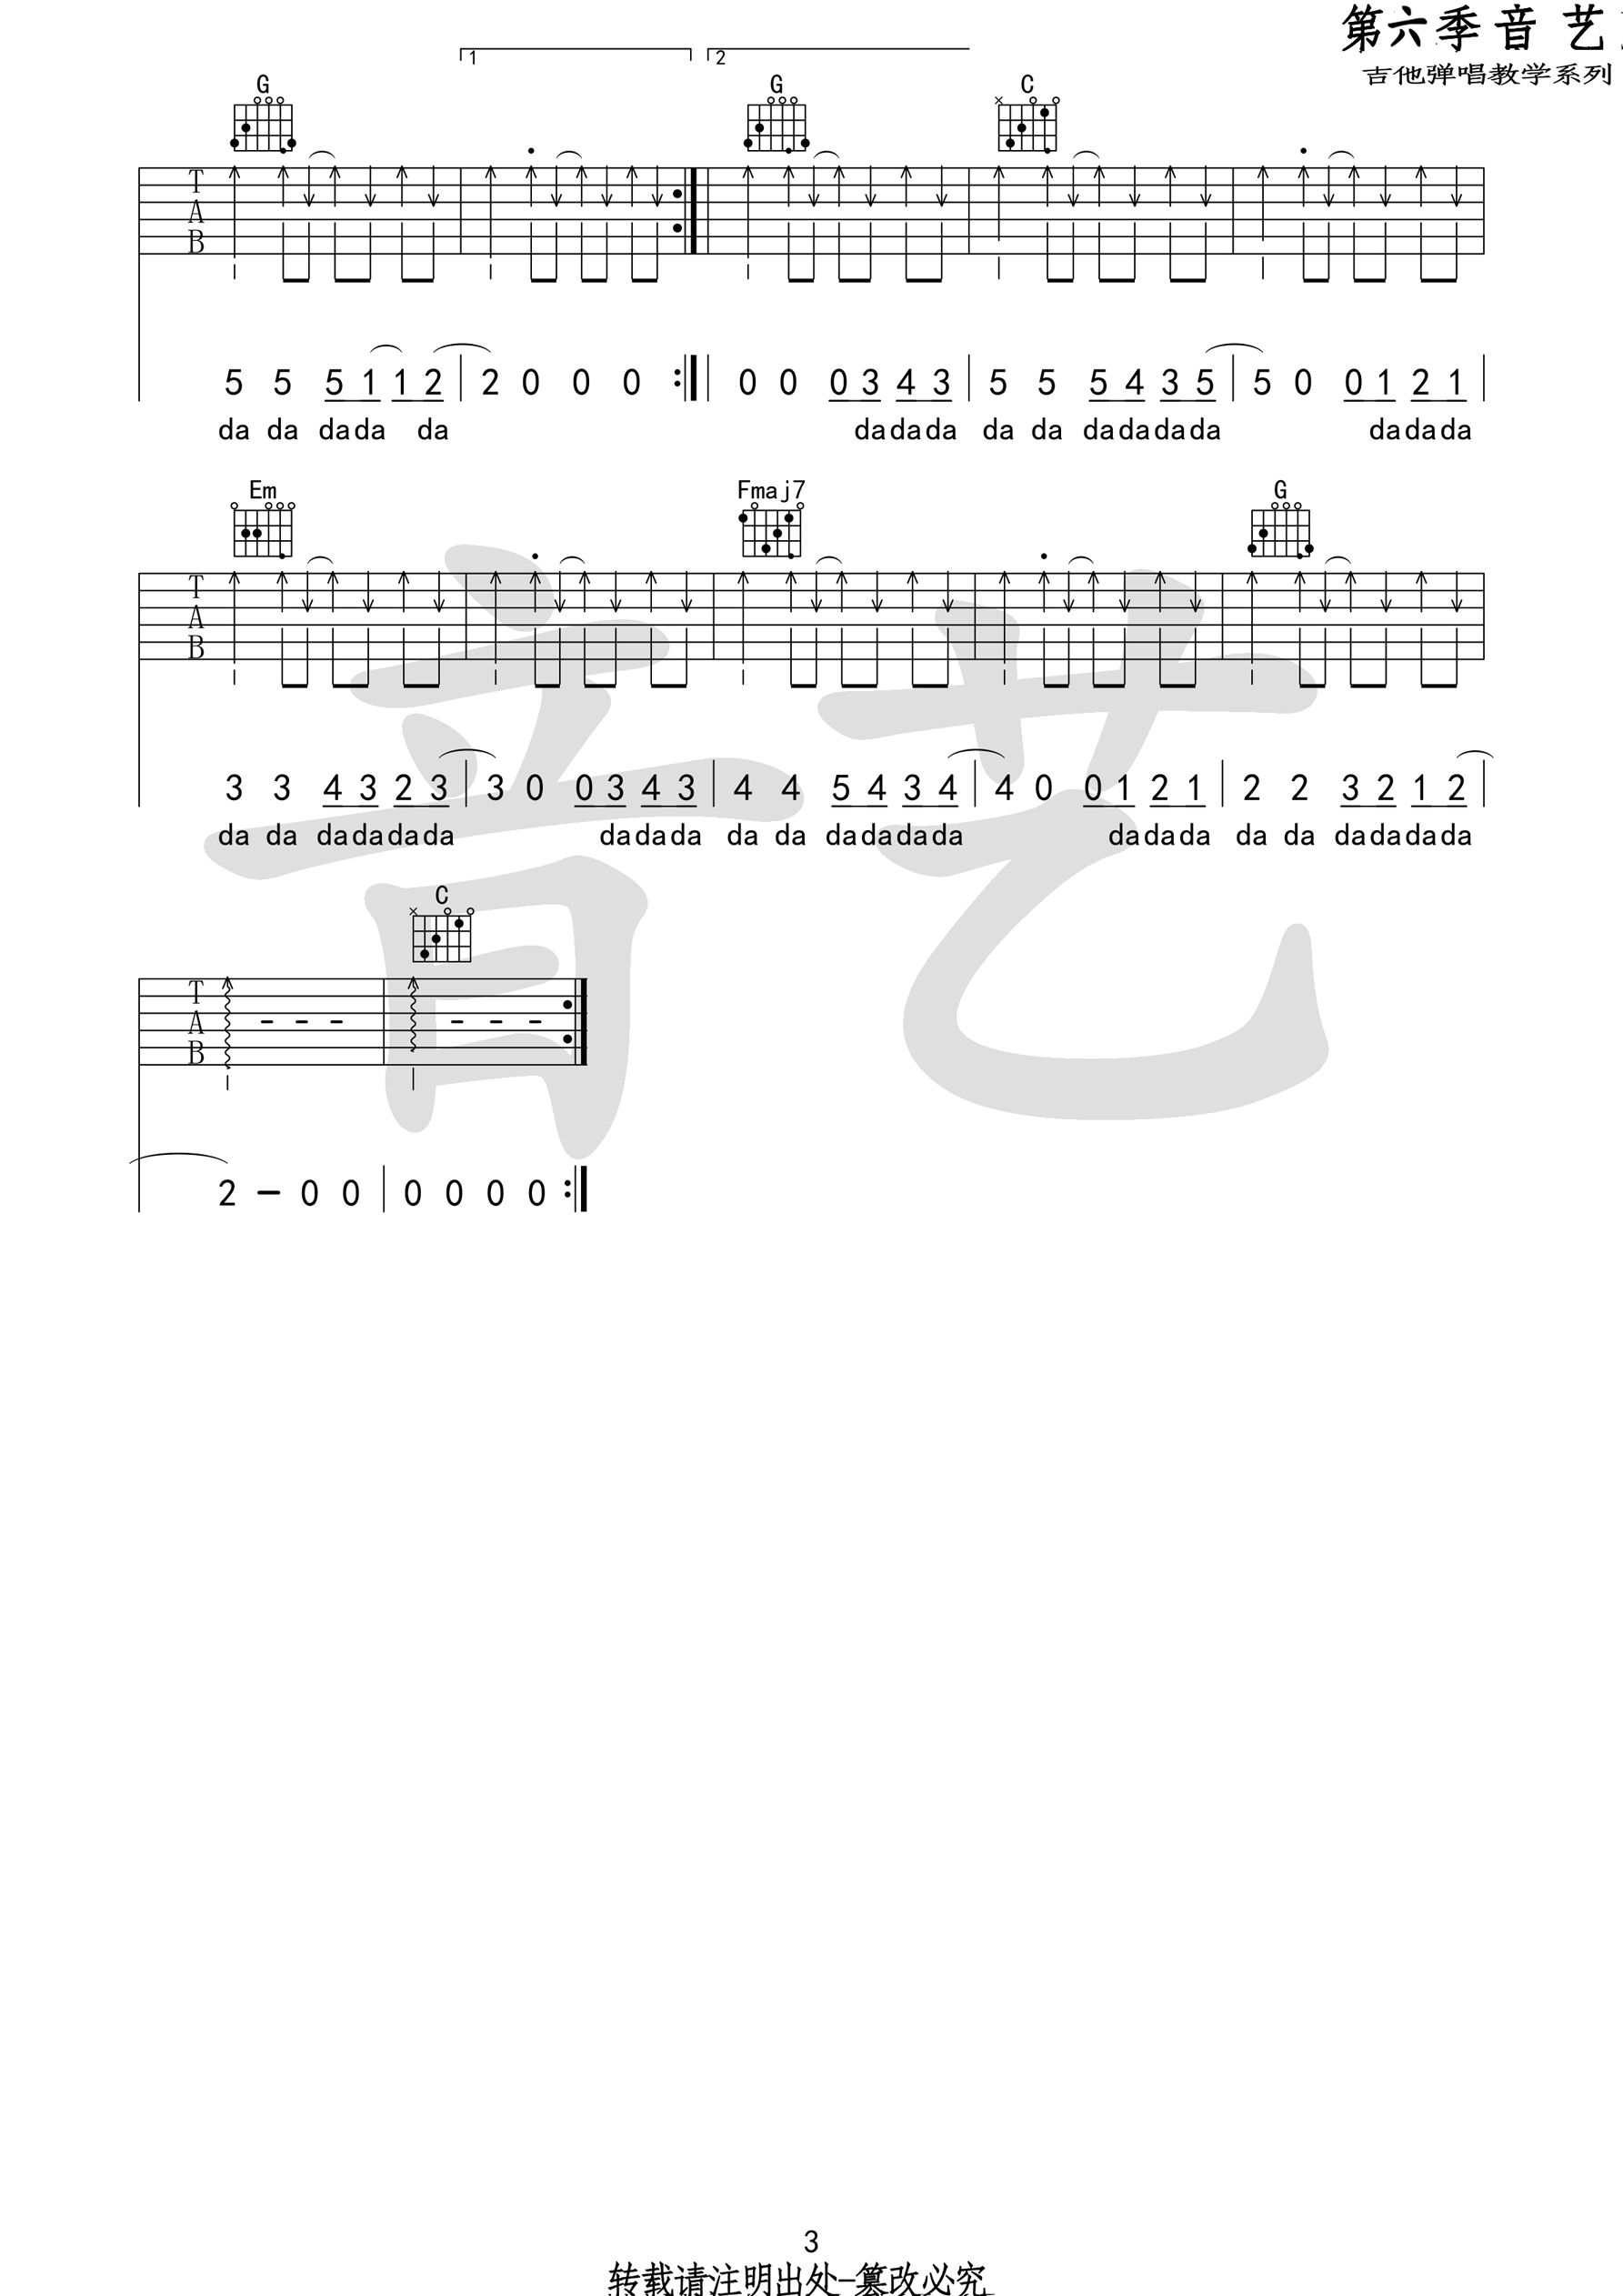 唱不了一首欢乐的歌吉他谱第(3)页